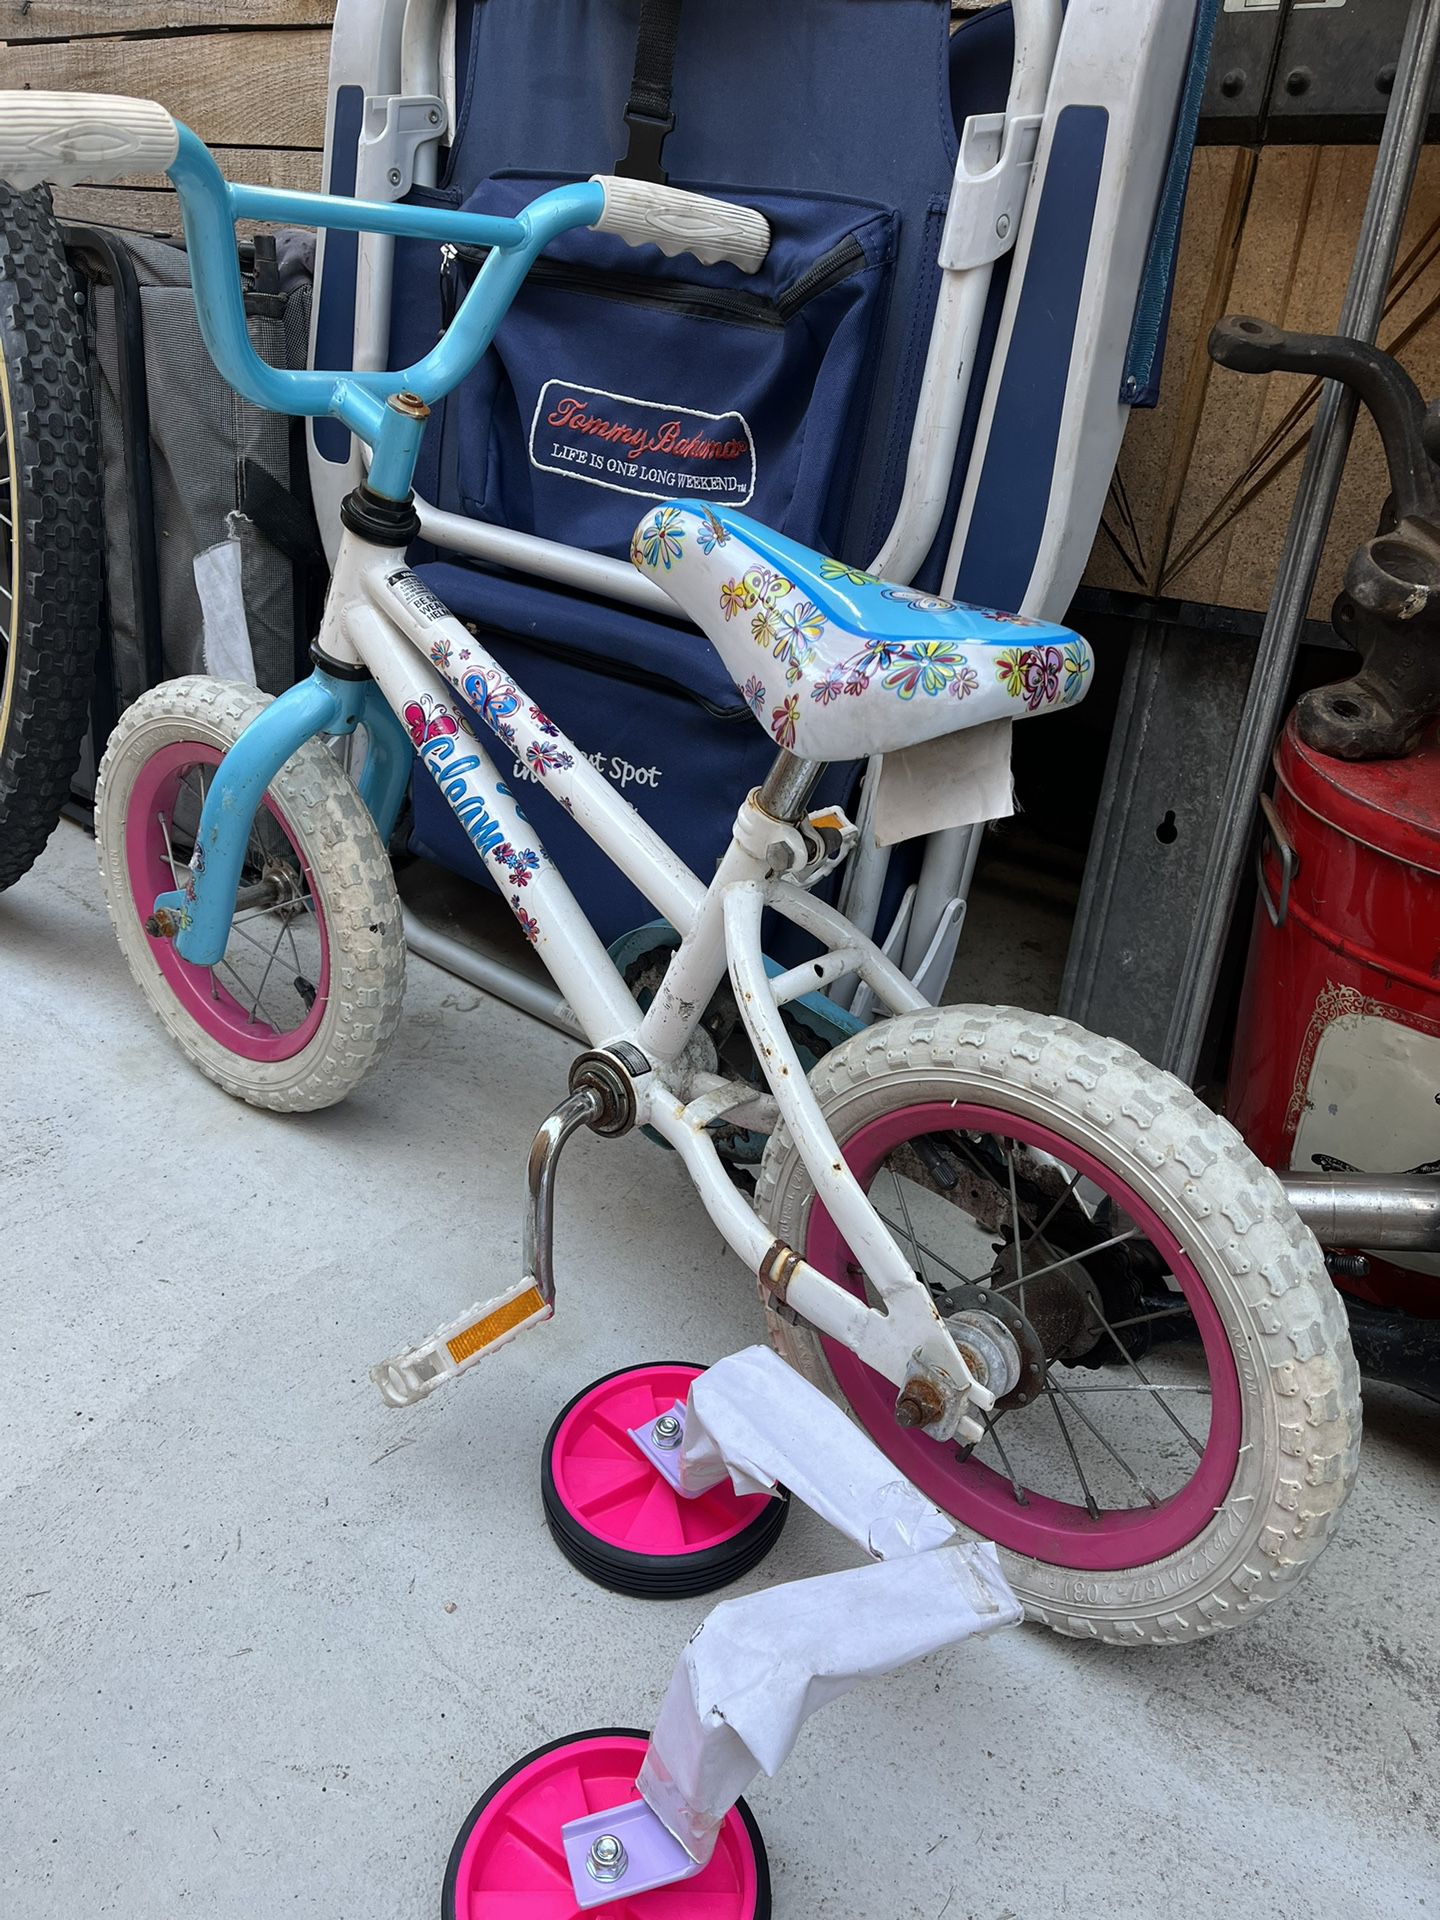 Bike For Kids 